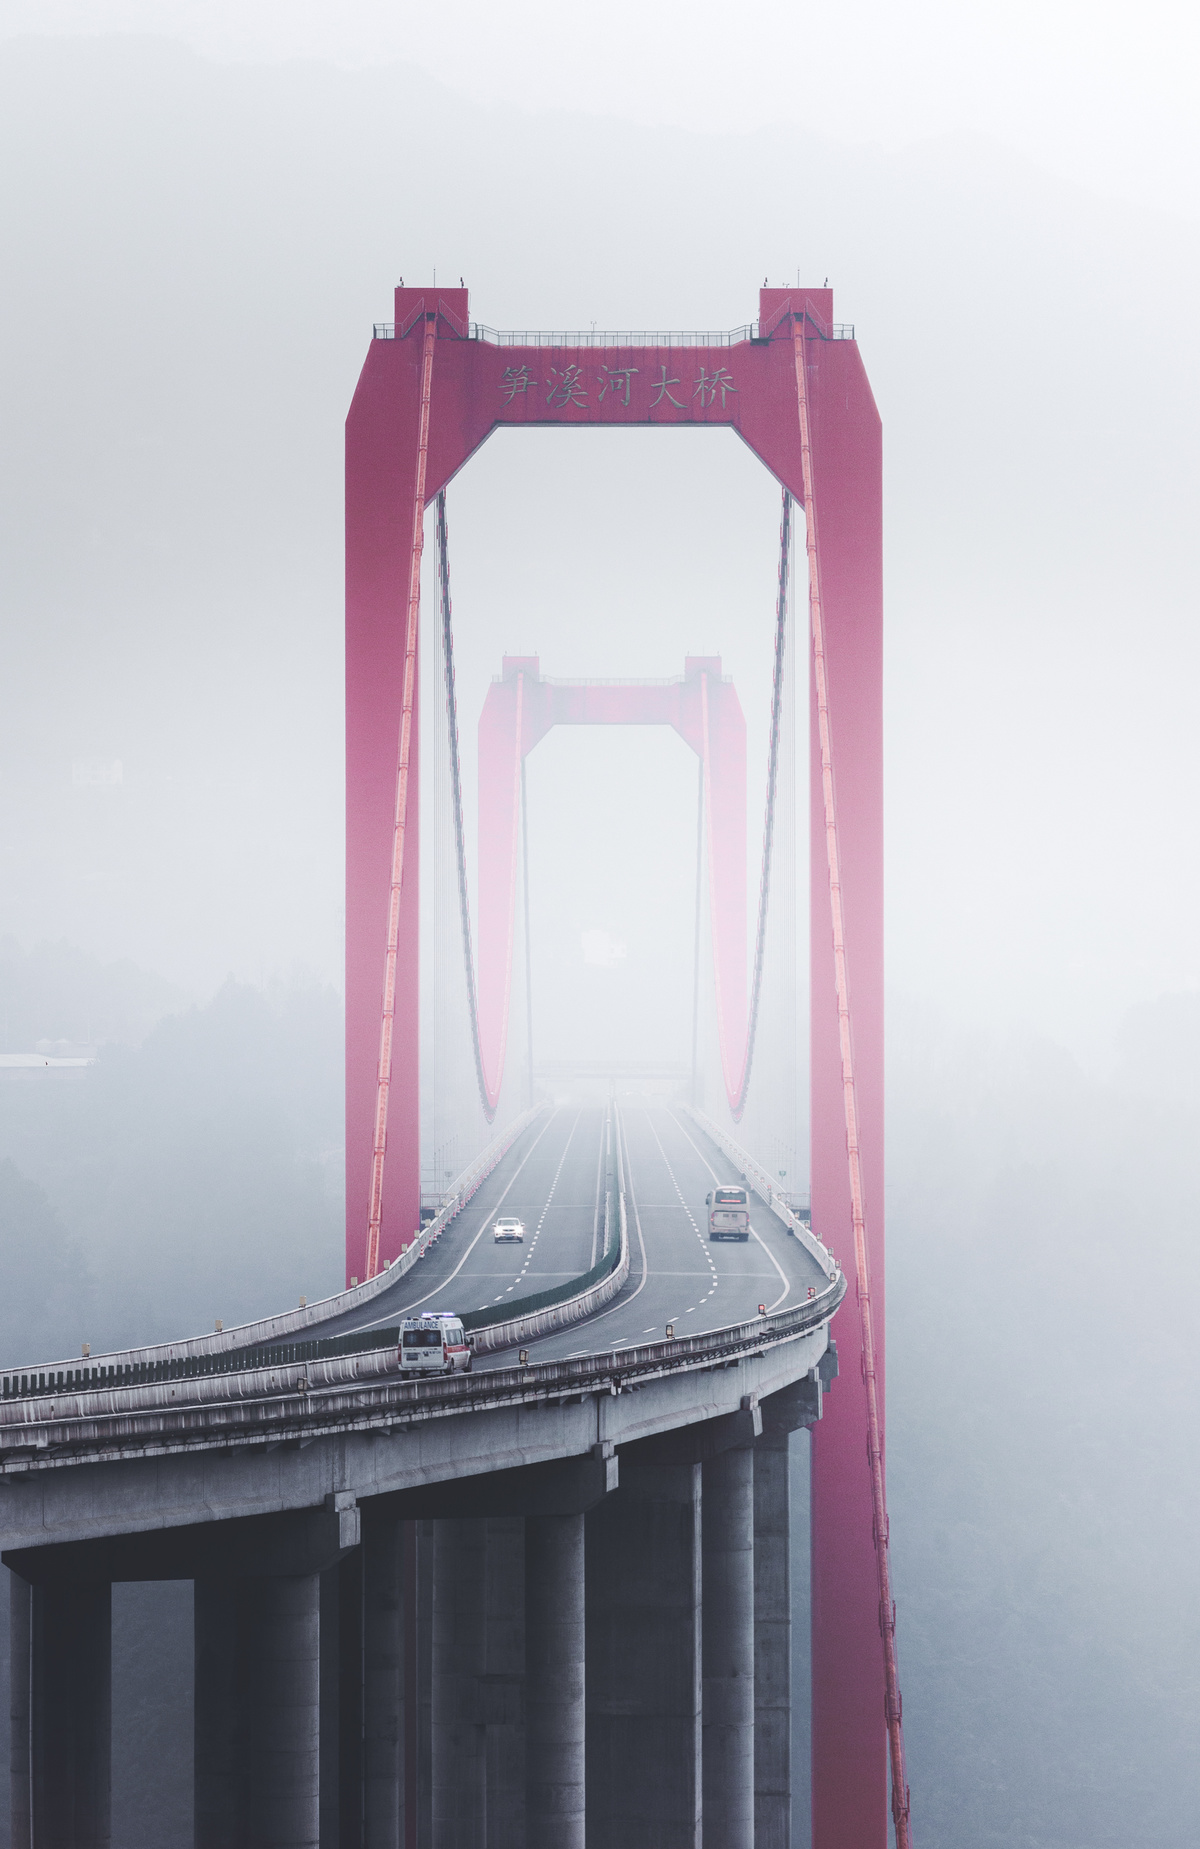 雾气缭绕的桥上 背景中有一座红色的桥。